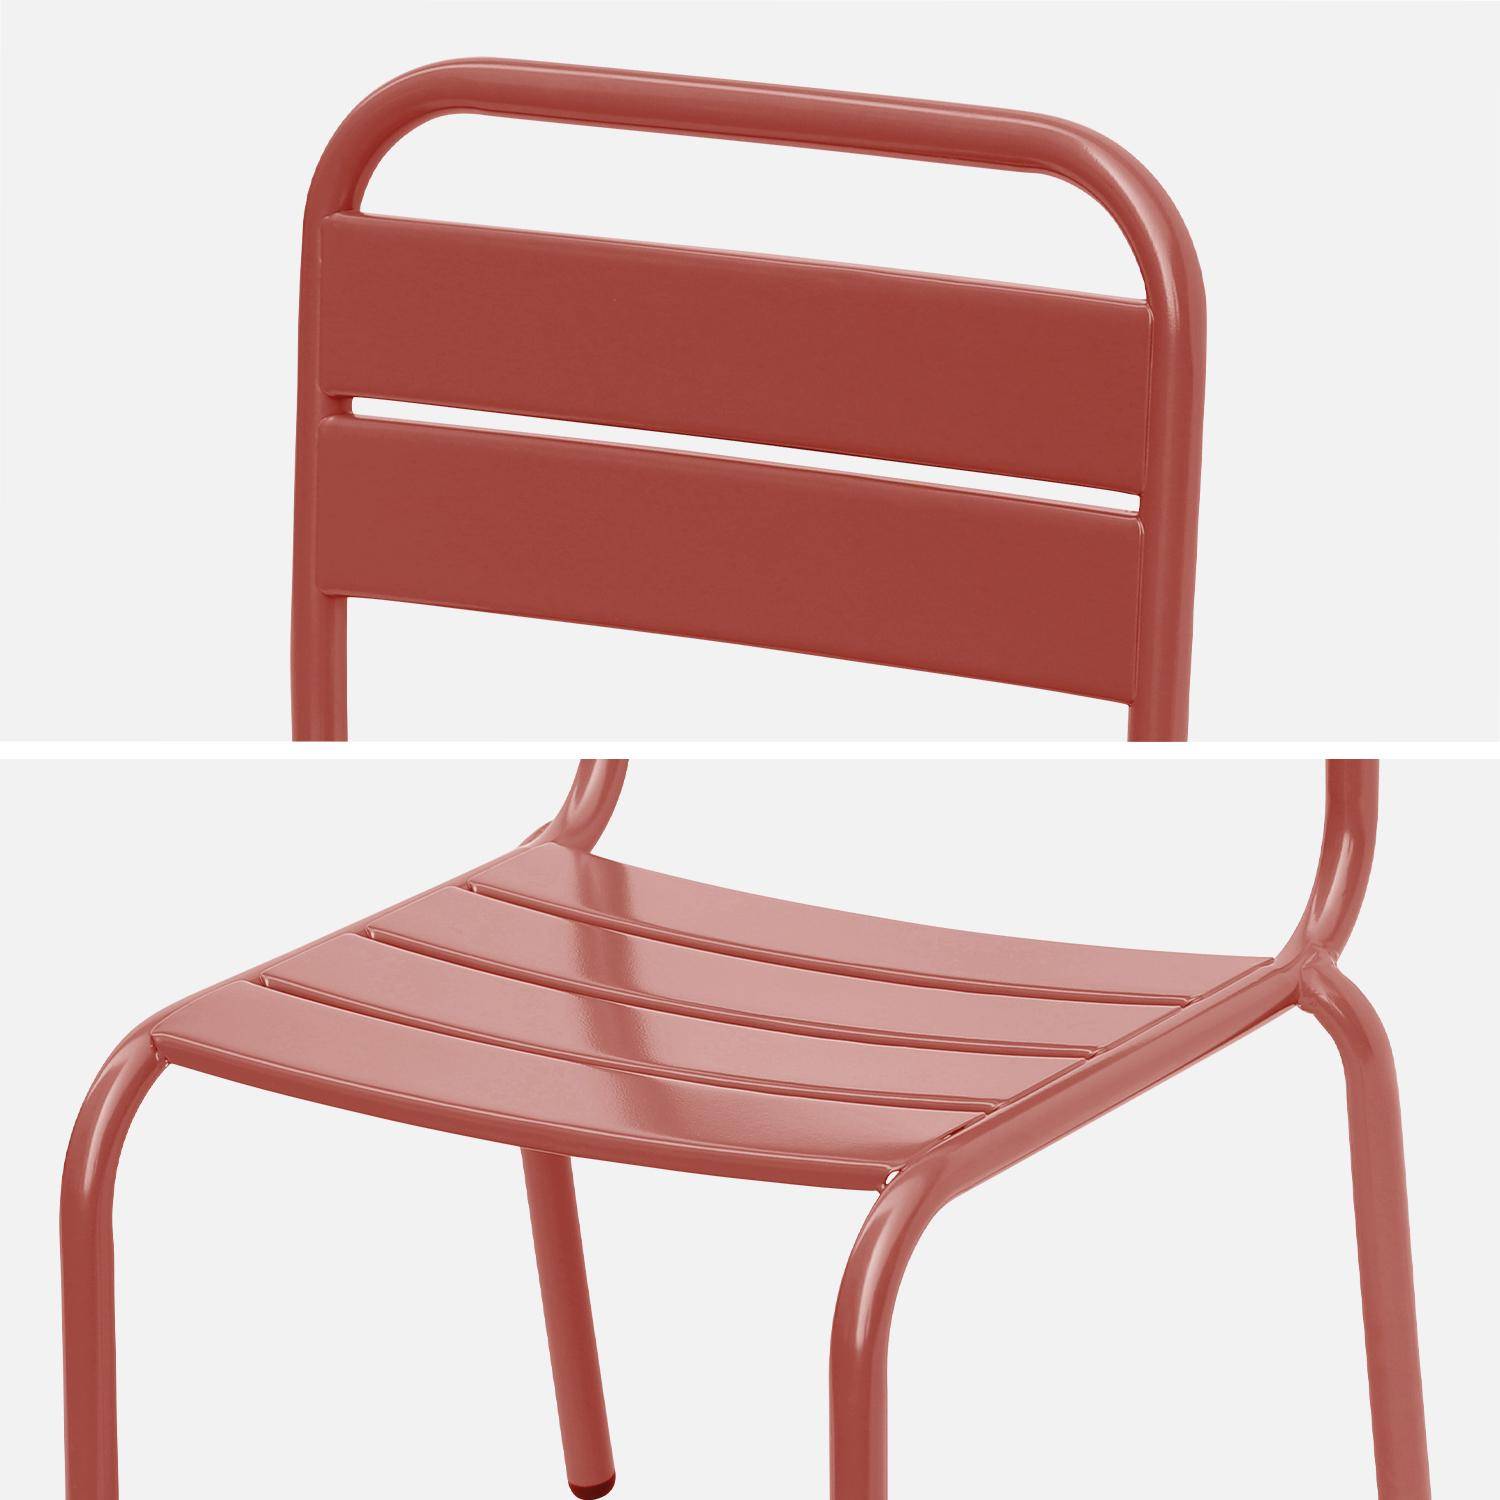 Tisch 48x48cm und 2 Stühle für Kinder, terrakotta, 48x48cm, für draußen verwendbar - Anna,sweeek,Photo7